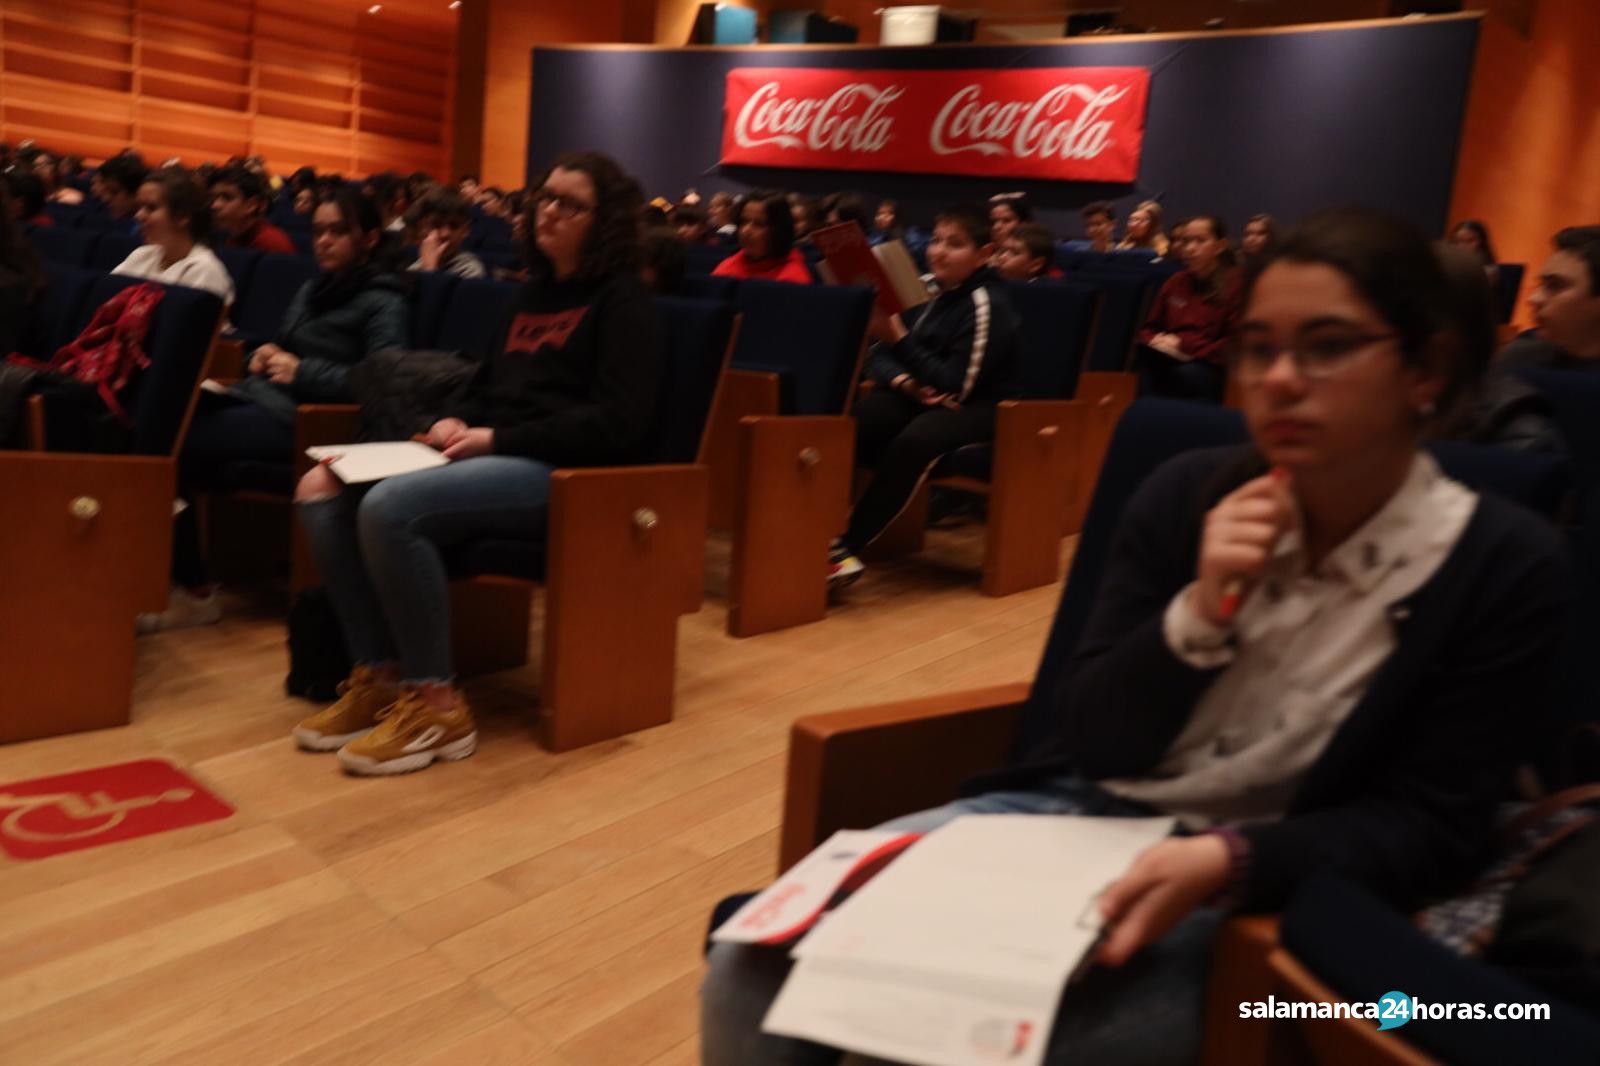  Concurso de Relatos Cortos de Coca Cola (19) 